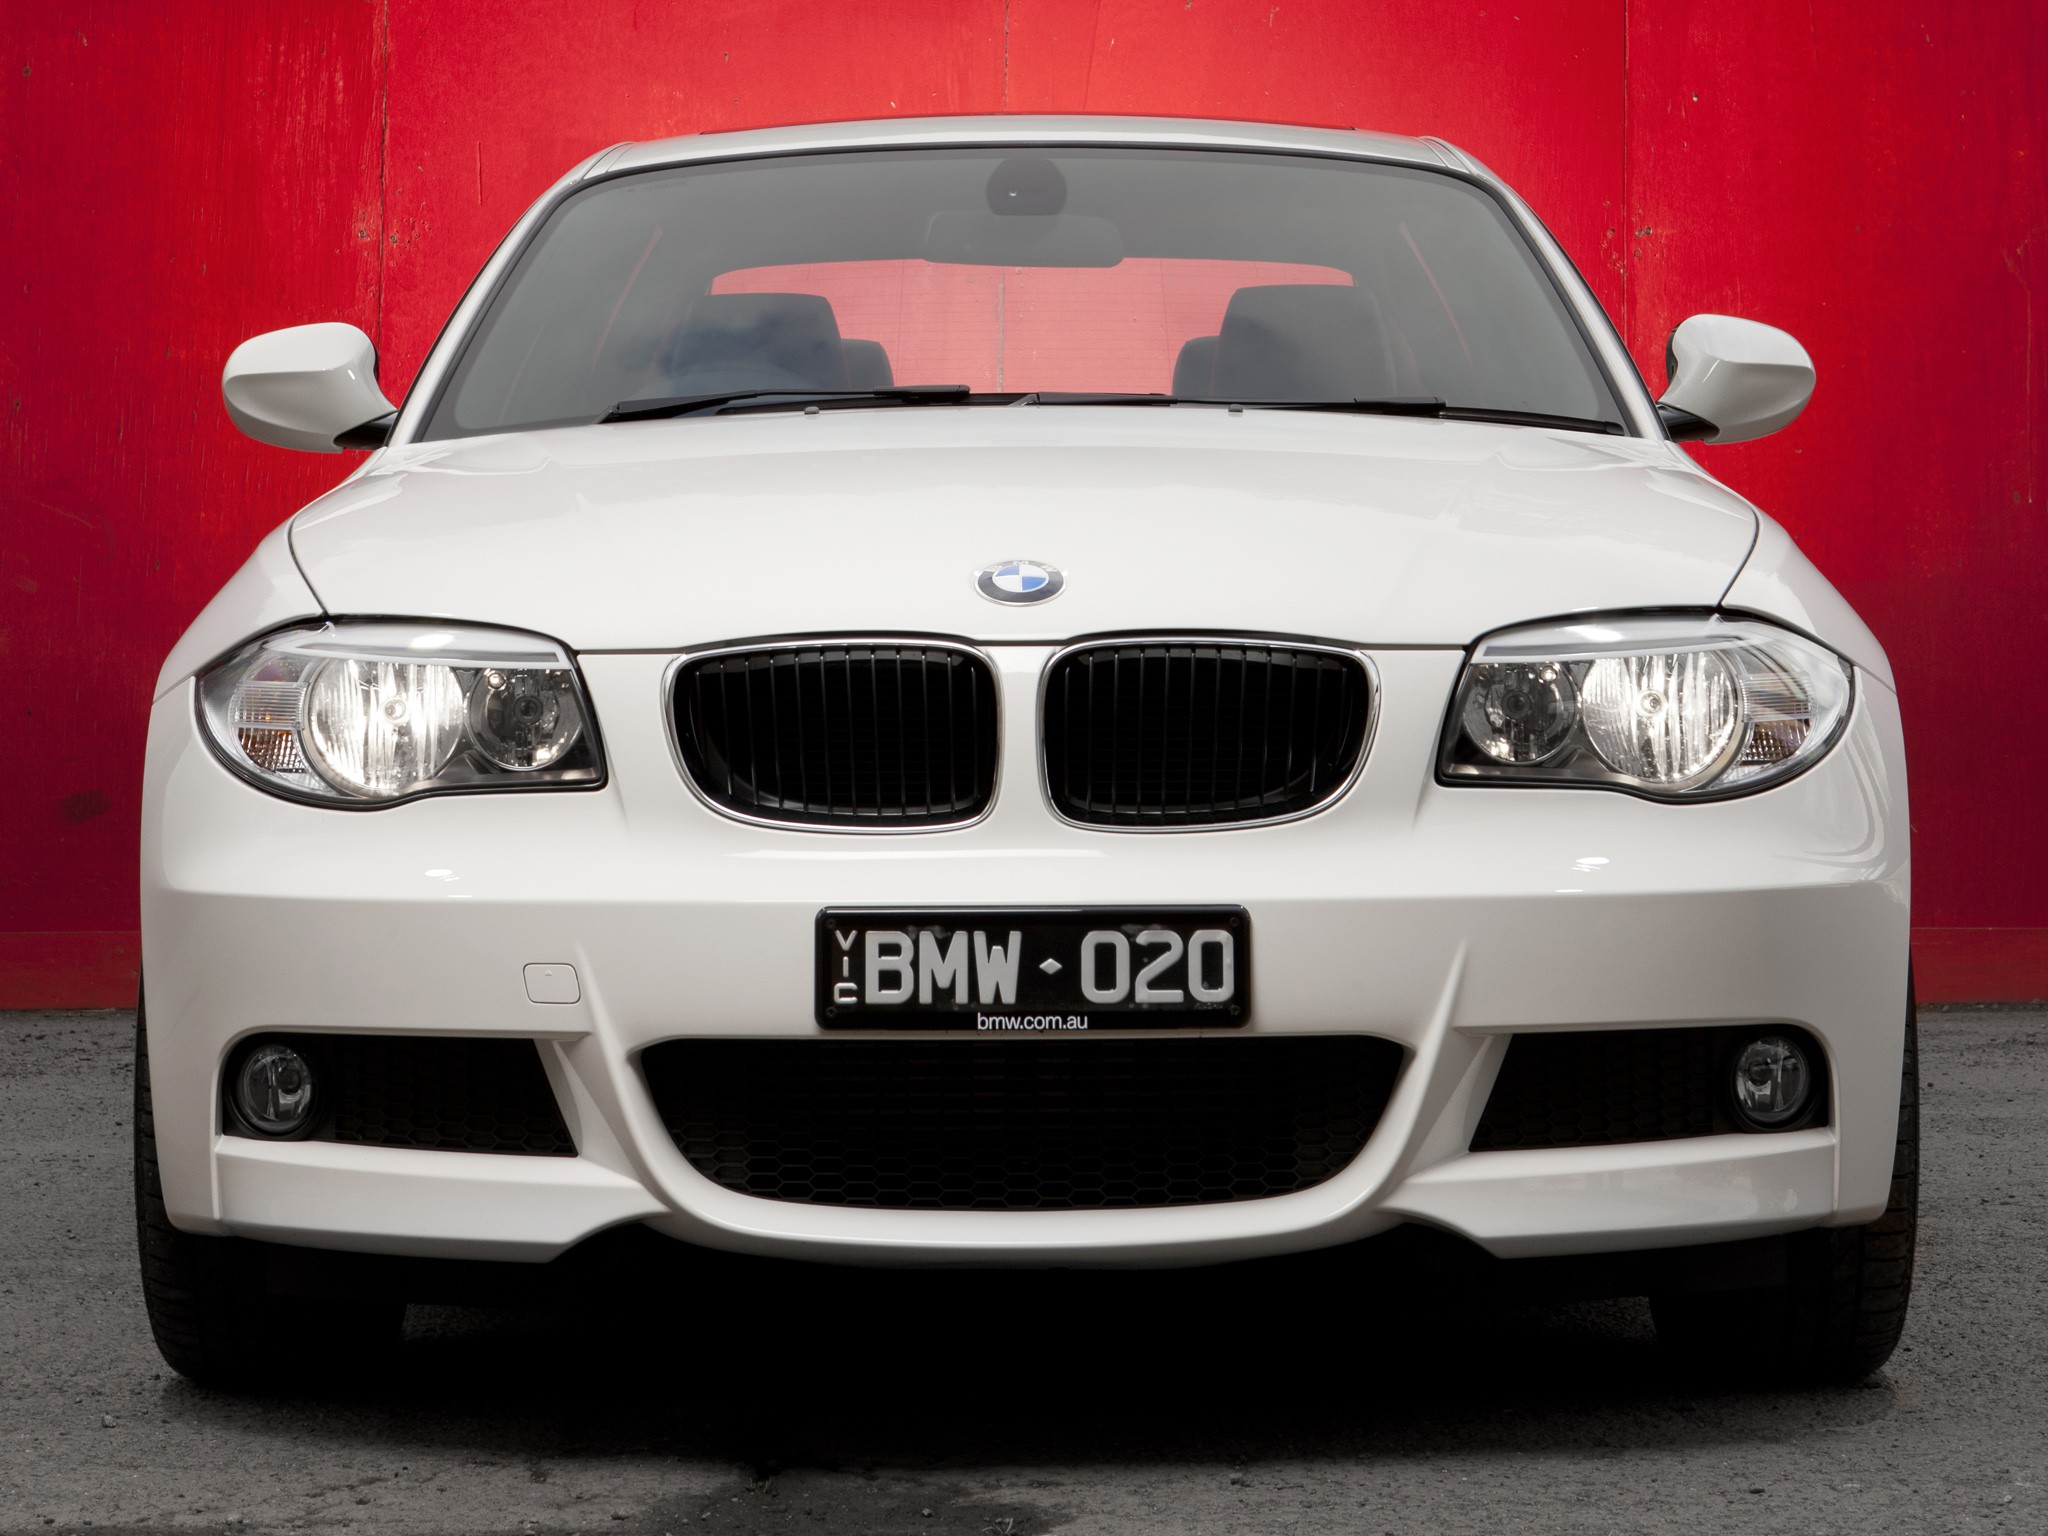 BMW 1 Series Coupe (E82) - 2010, 2011, 2012, 2013 ...